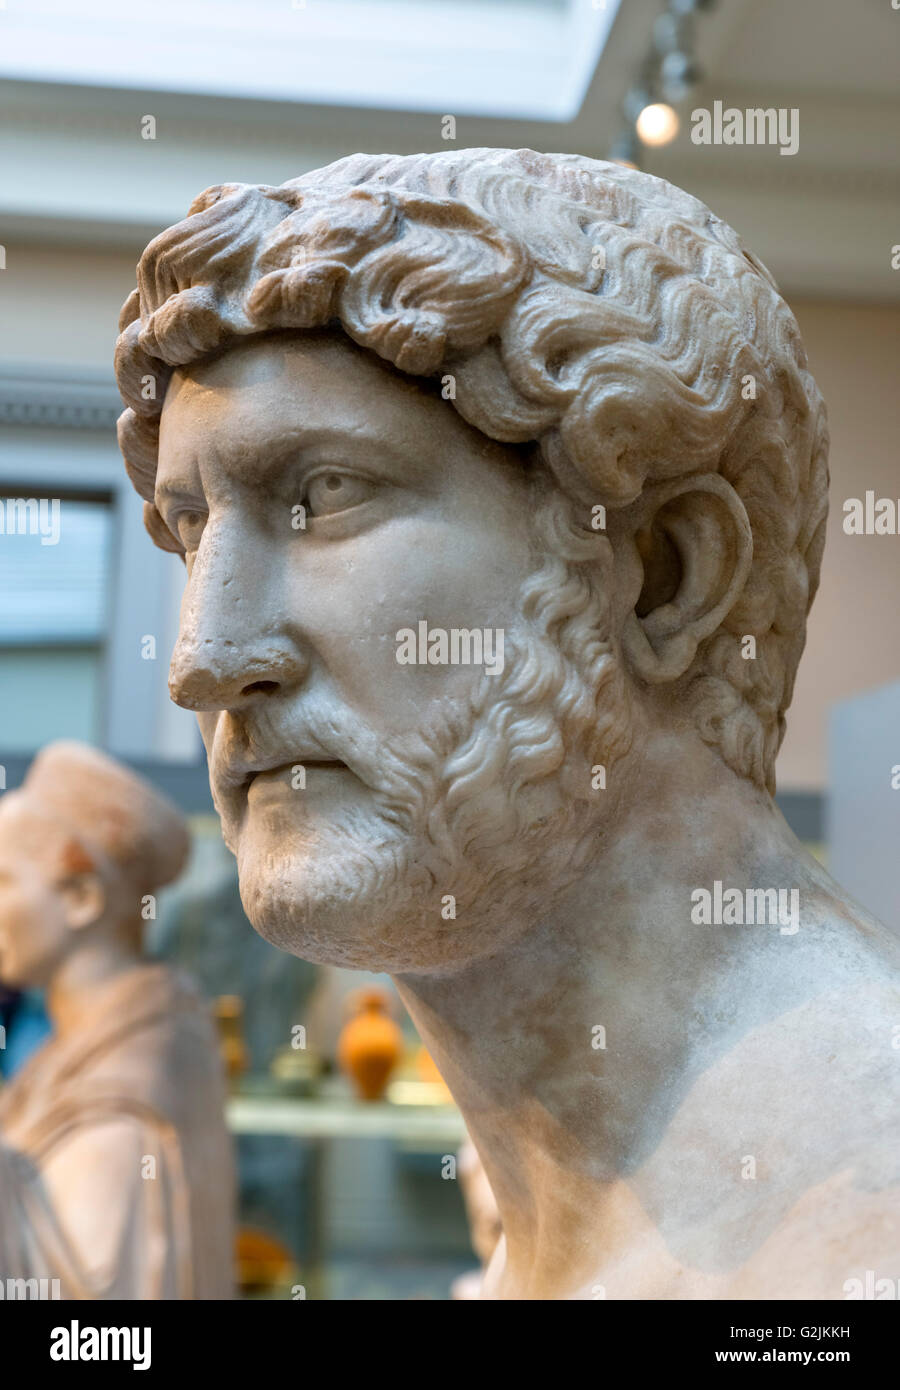 Busto de mármol del Emperador Adriano (AD 76 - 138), 14º emperador del Imperio Romano (AD 117-138), fecha de la estatua c. Anuncio 117-138, British Museum, Bloomsbury, Londres, Inglaterra, Reino Unido. Foto de stock